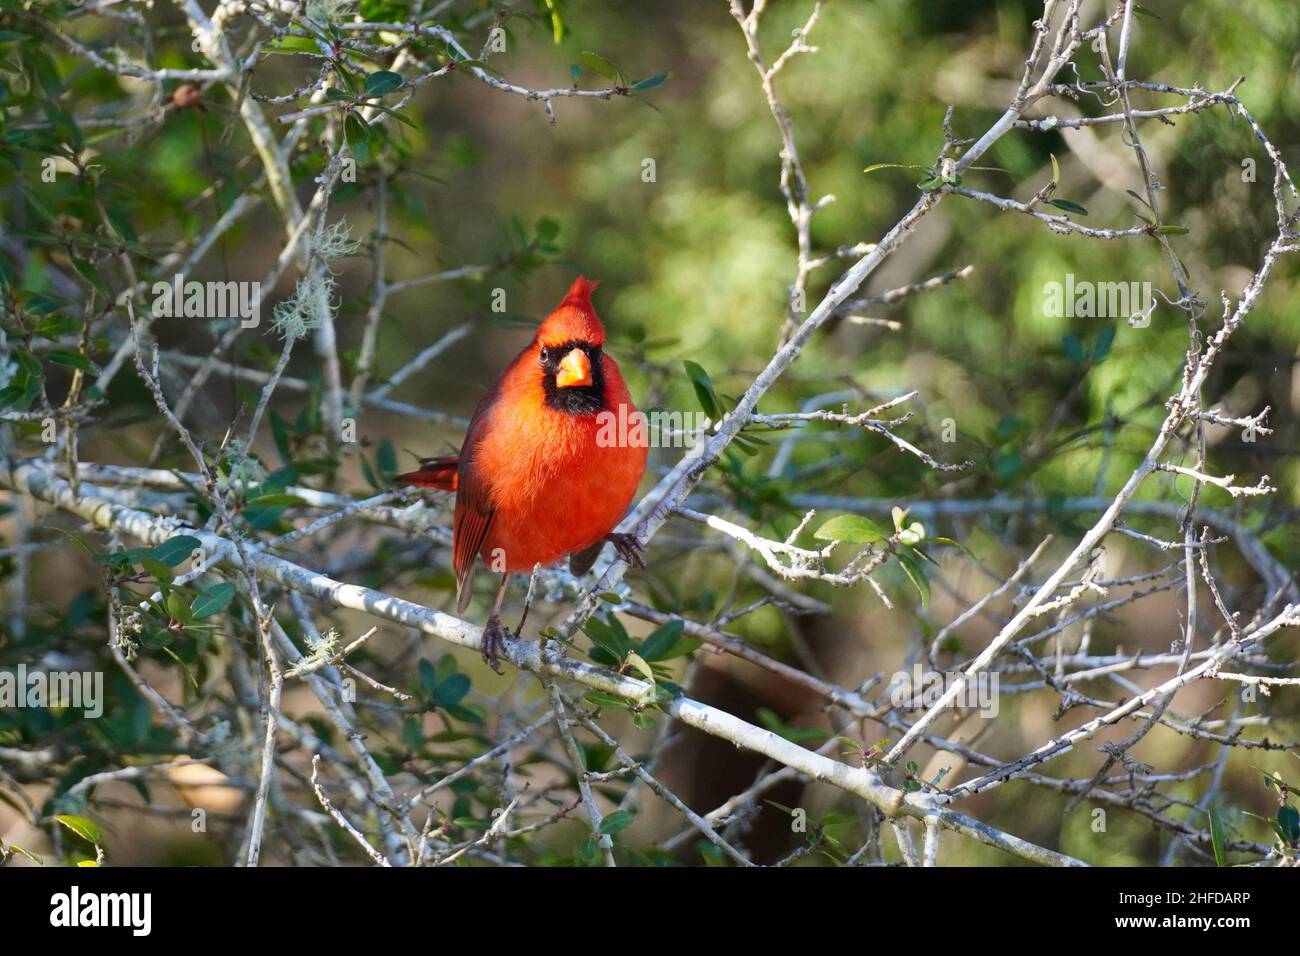 Un Cardenal del Norte, Cardinalis cardinalis, encaramado en una rama. El cardenal masculino es de color rojo brillante también se conoce como un pájaro rojo o cardi rojo Foto de stock